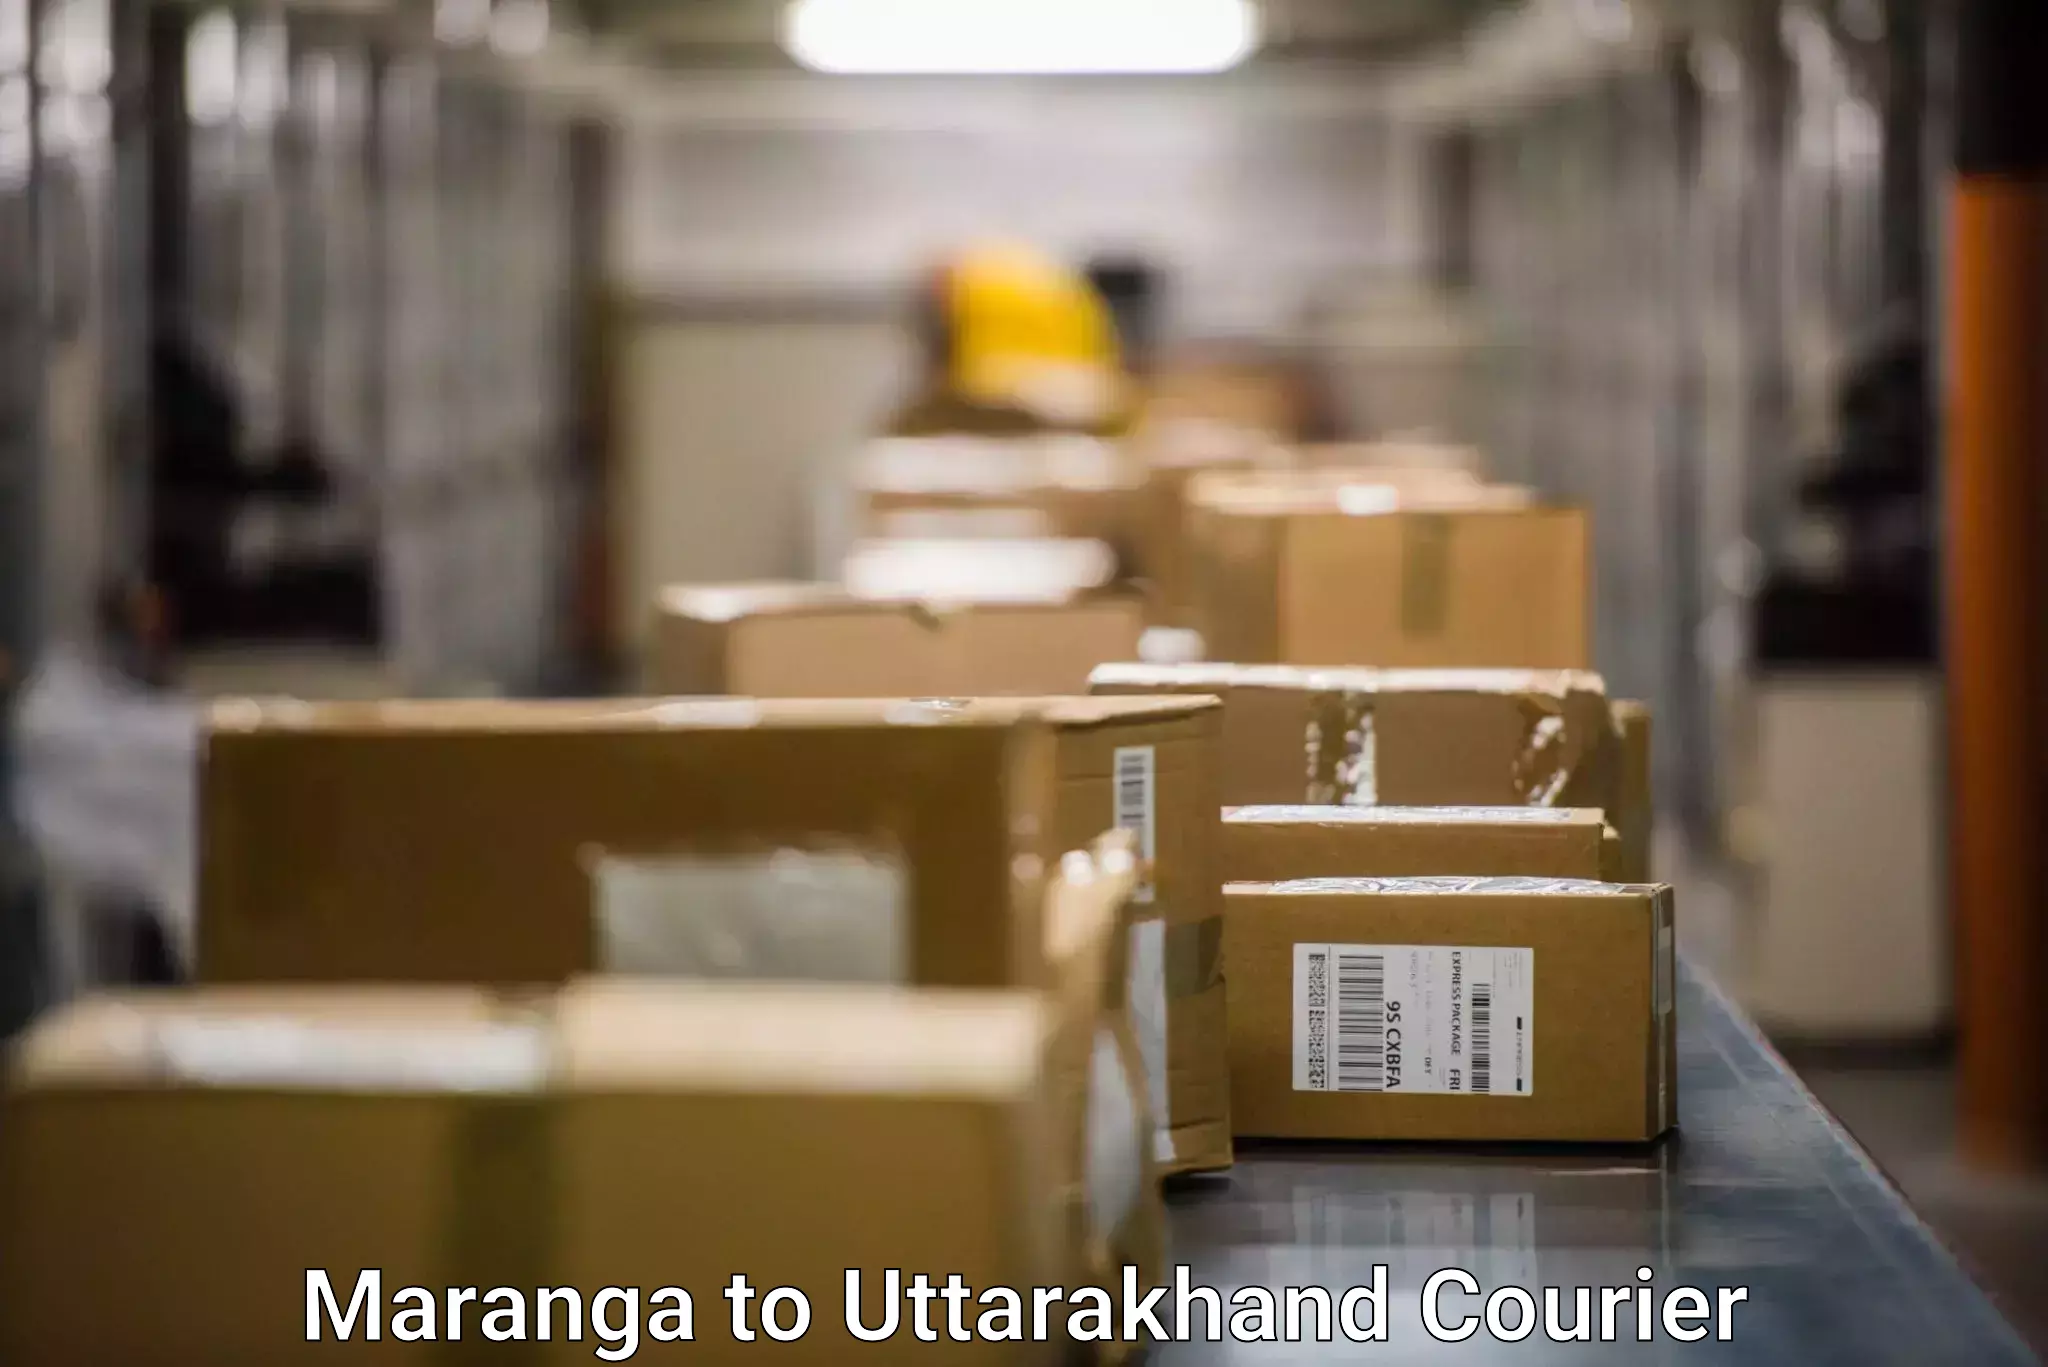 Automated parcel services Maranga to Uttarakhand